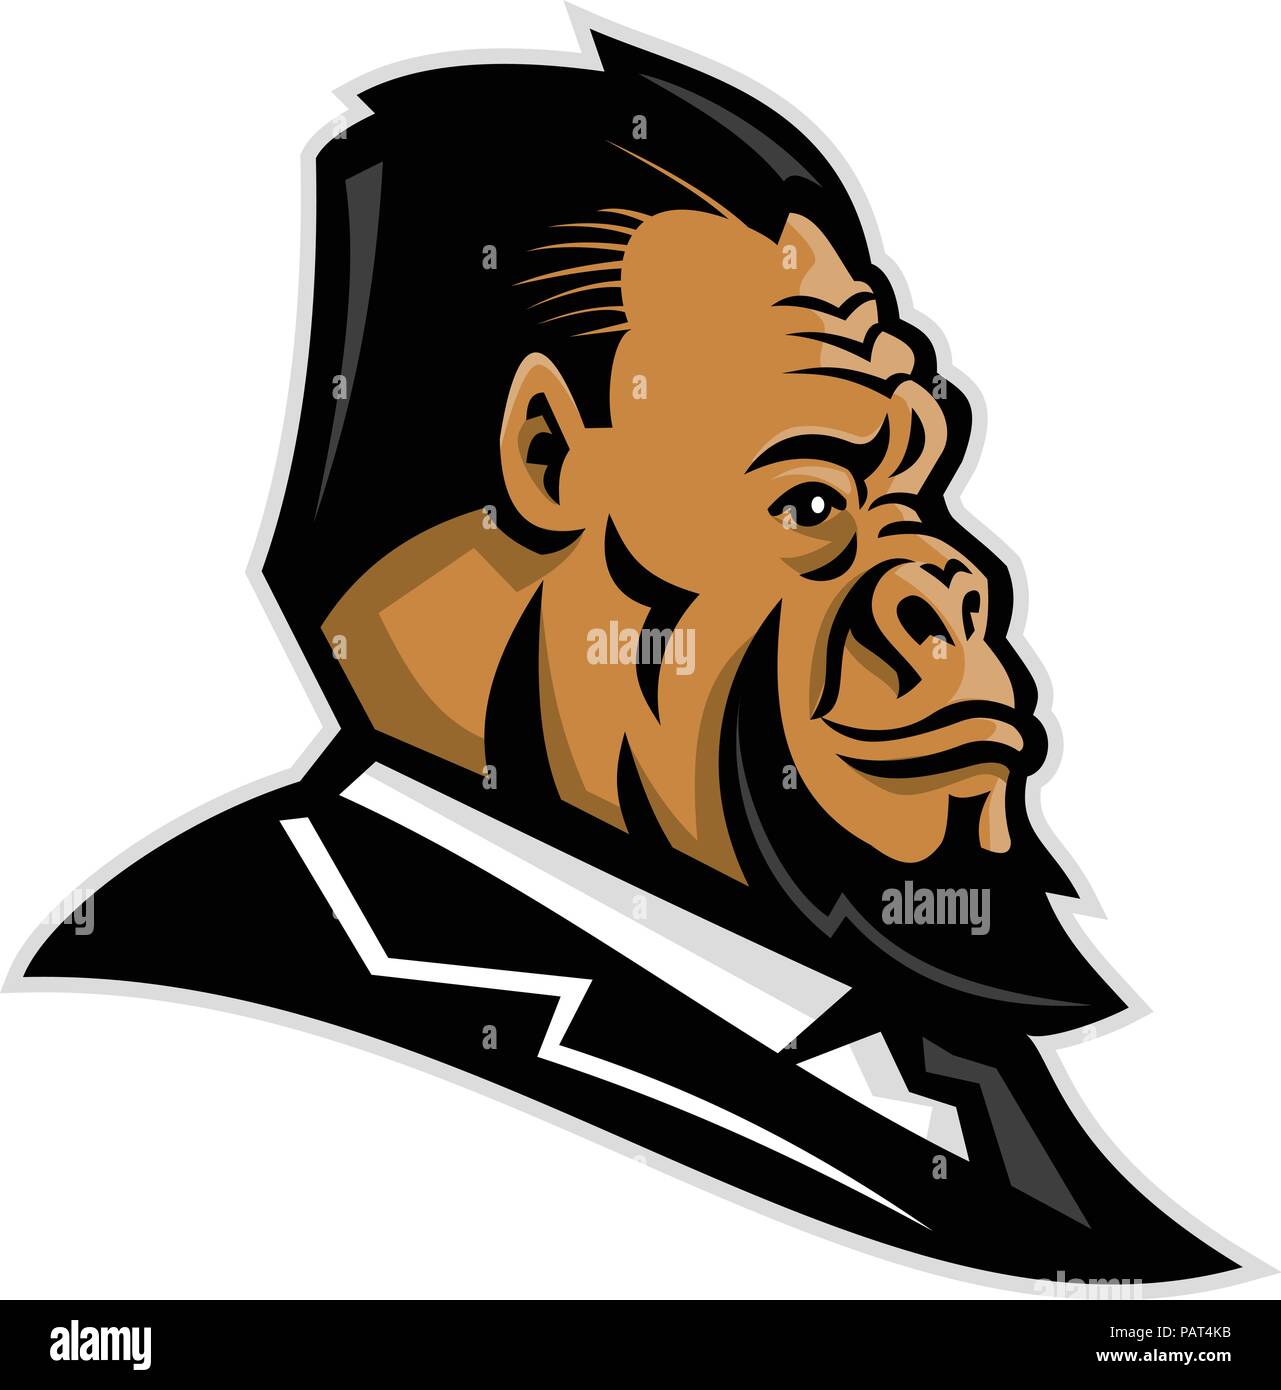 L'icône de mascotte illustration de tête d'un gorille, ape, primate, caveman, ou de Neandertal l'homme primitif, portant tailleur side view Illustration de Vecteur